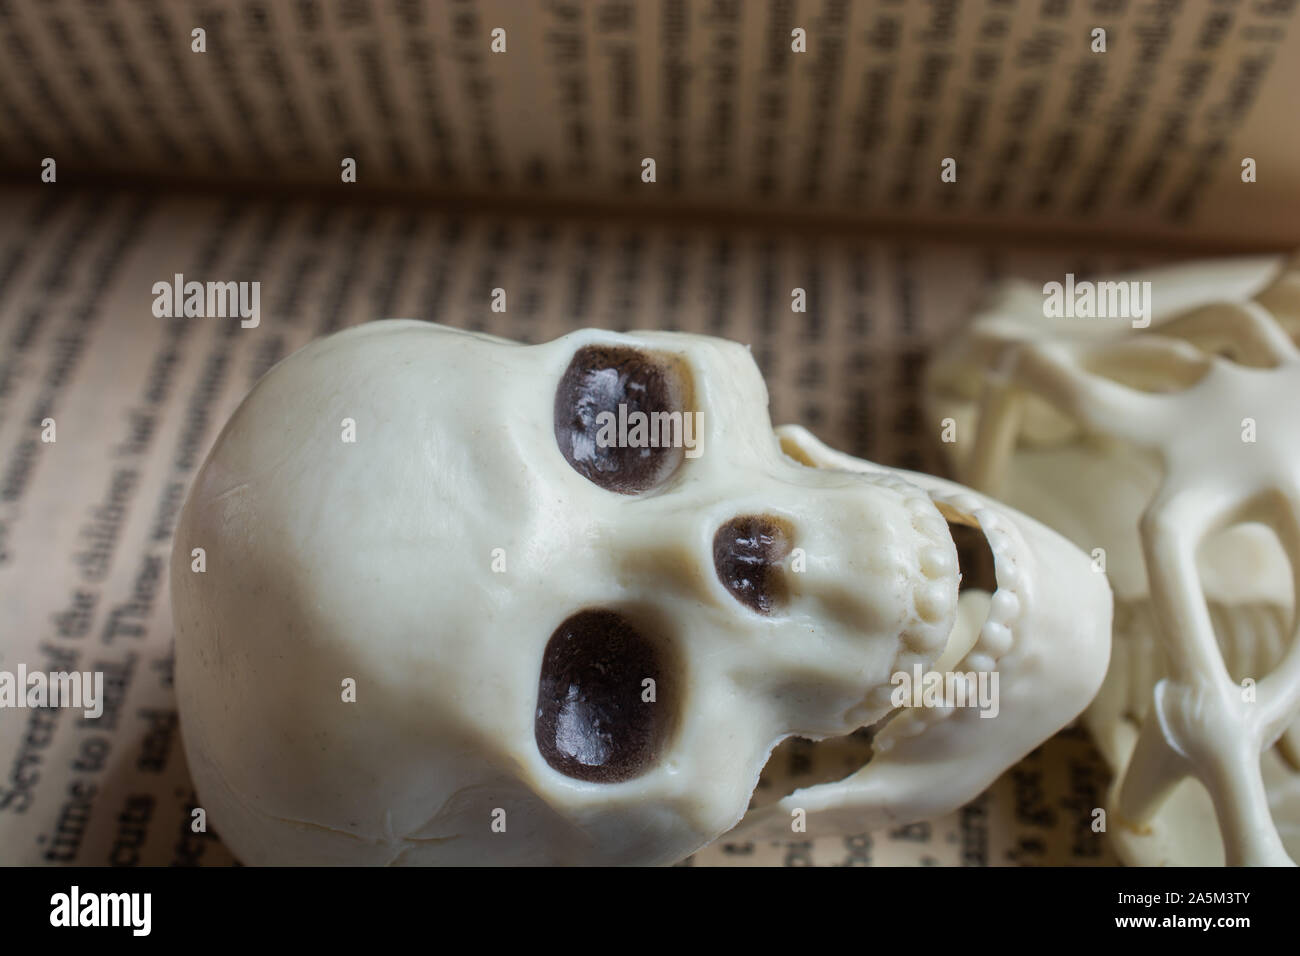 Modello di artificiale dello scheletro umano in un libro con testo Foto Stock